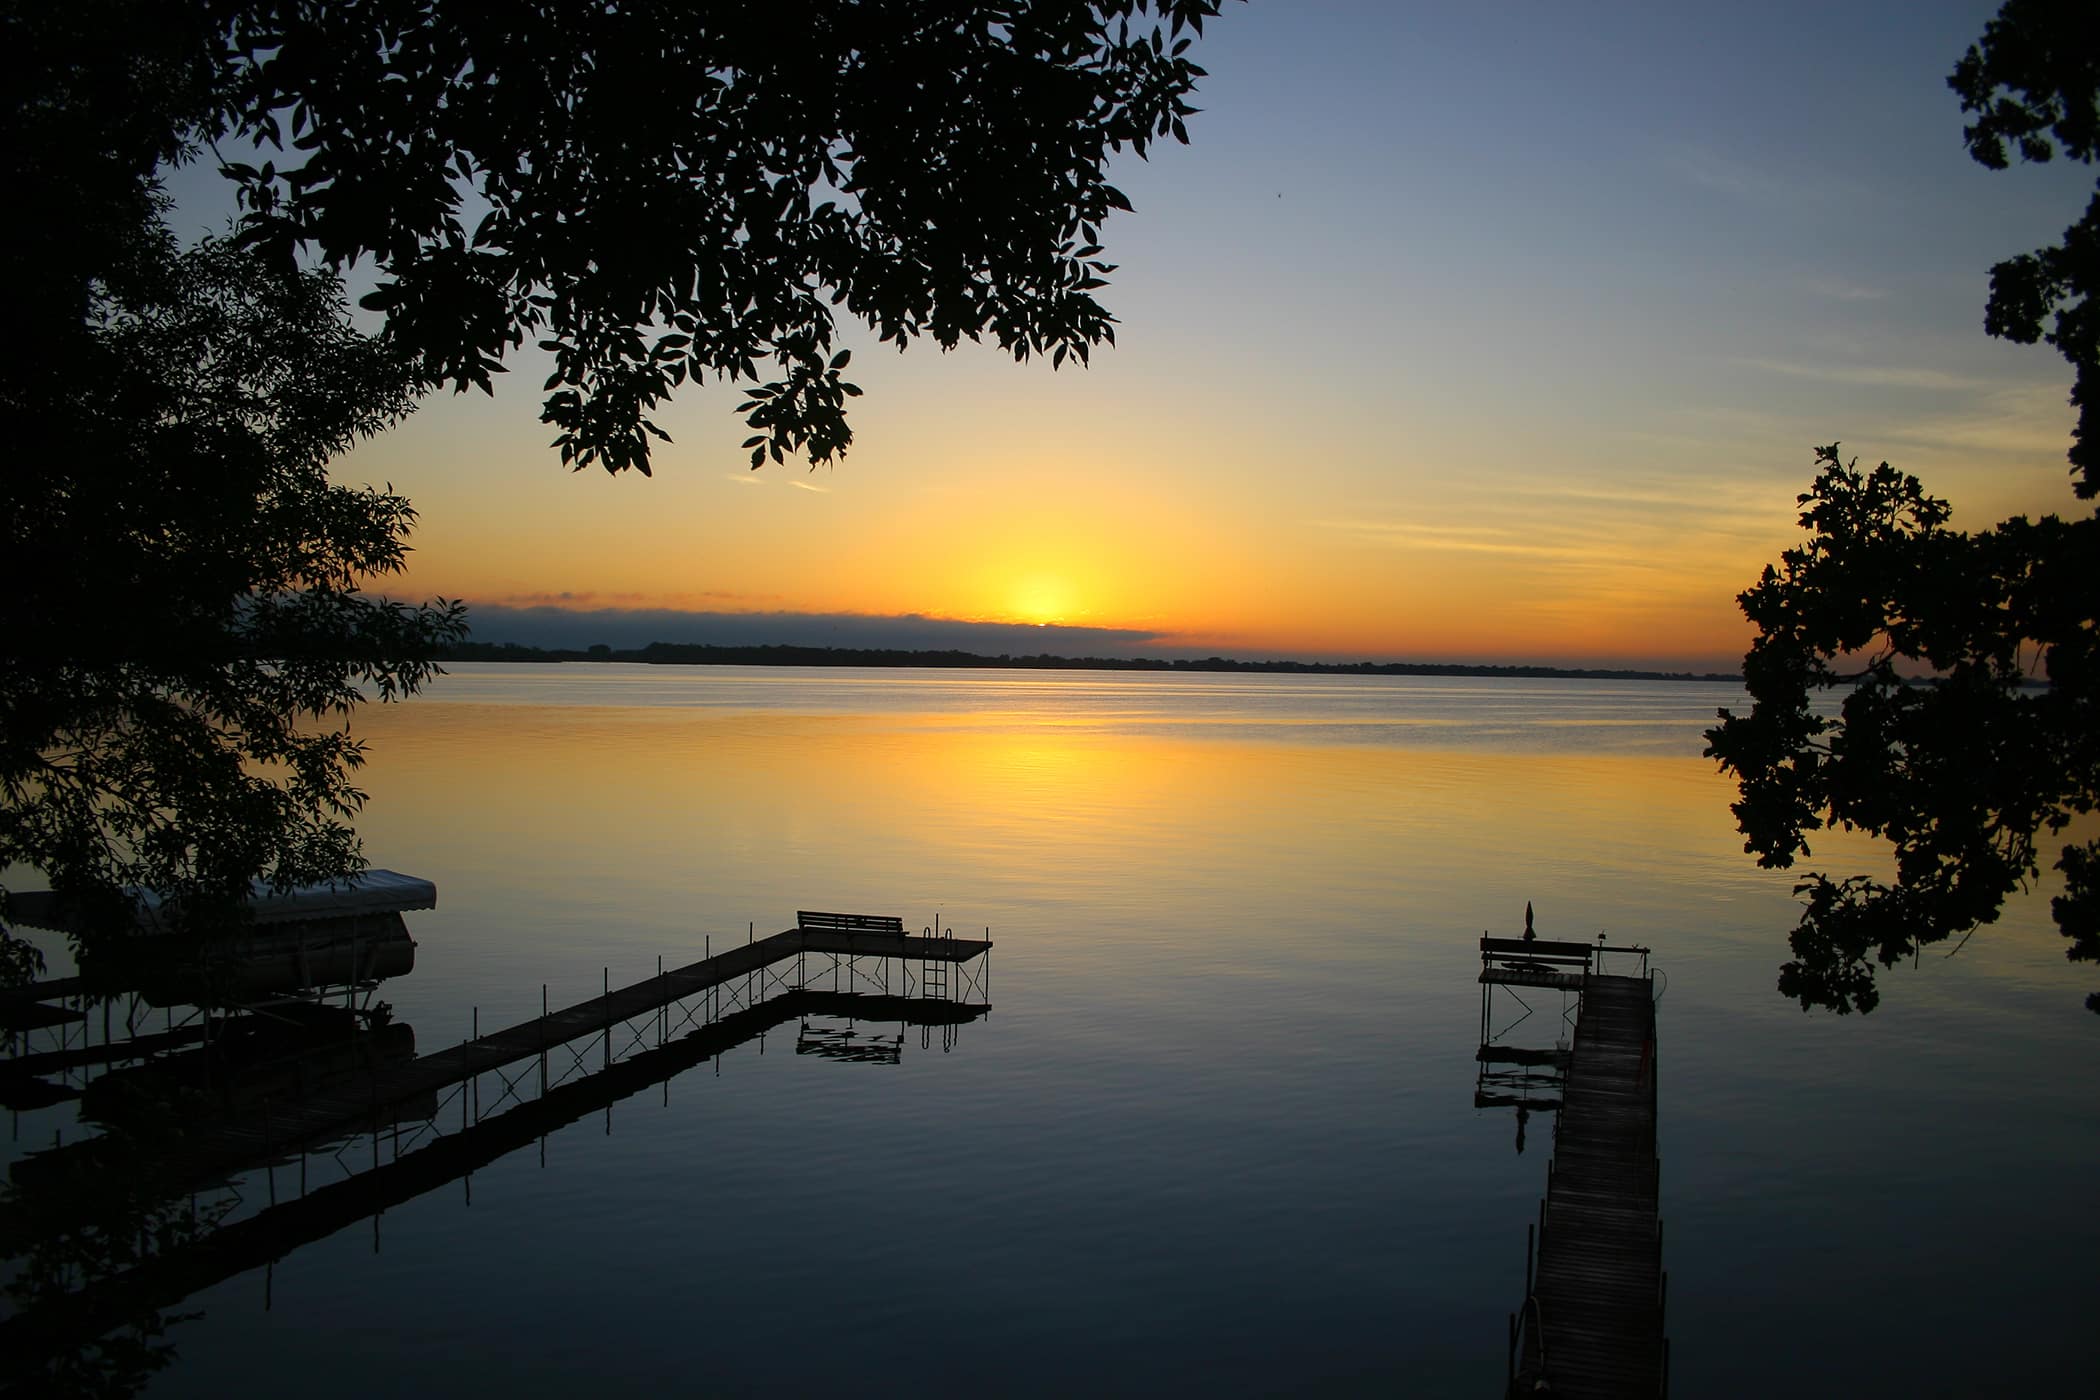 Sunset at Spirit Lake, Iowa